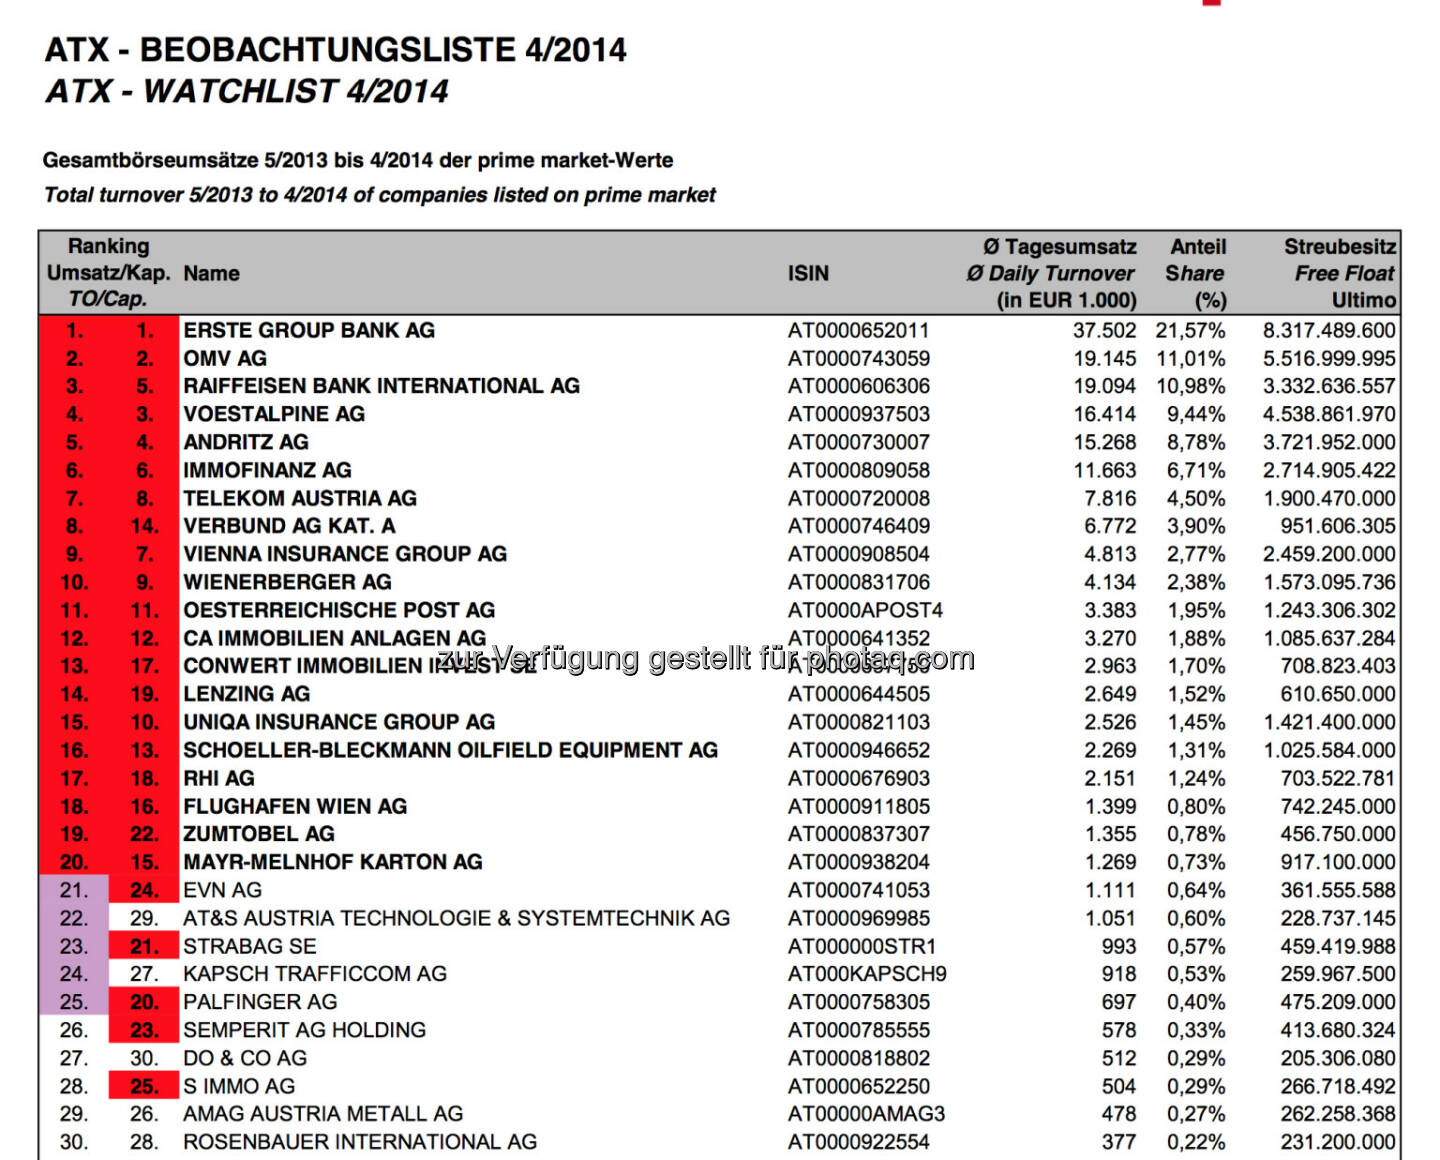 ATX-Beobachtungsliste 4/14 - wie erwartet ohne Buwog, aktueller ATX bestätigt (c) Wiener Börse